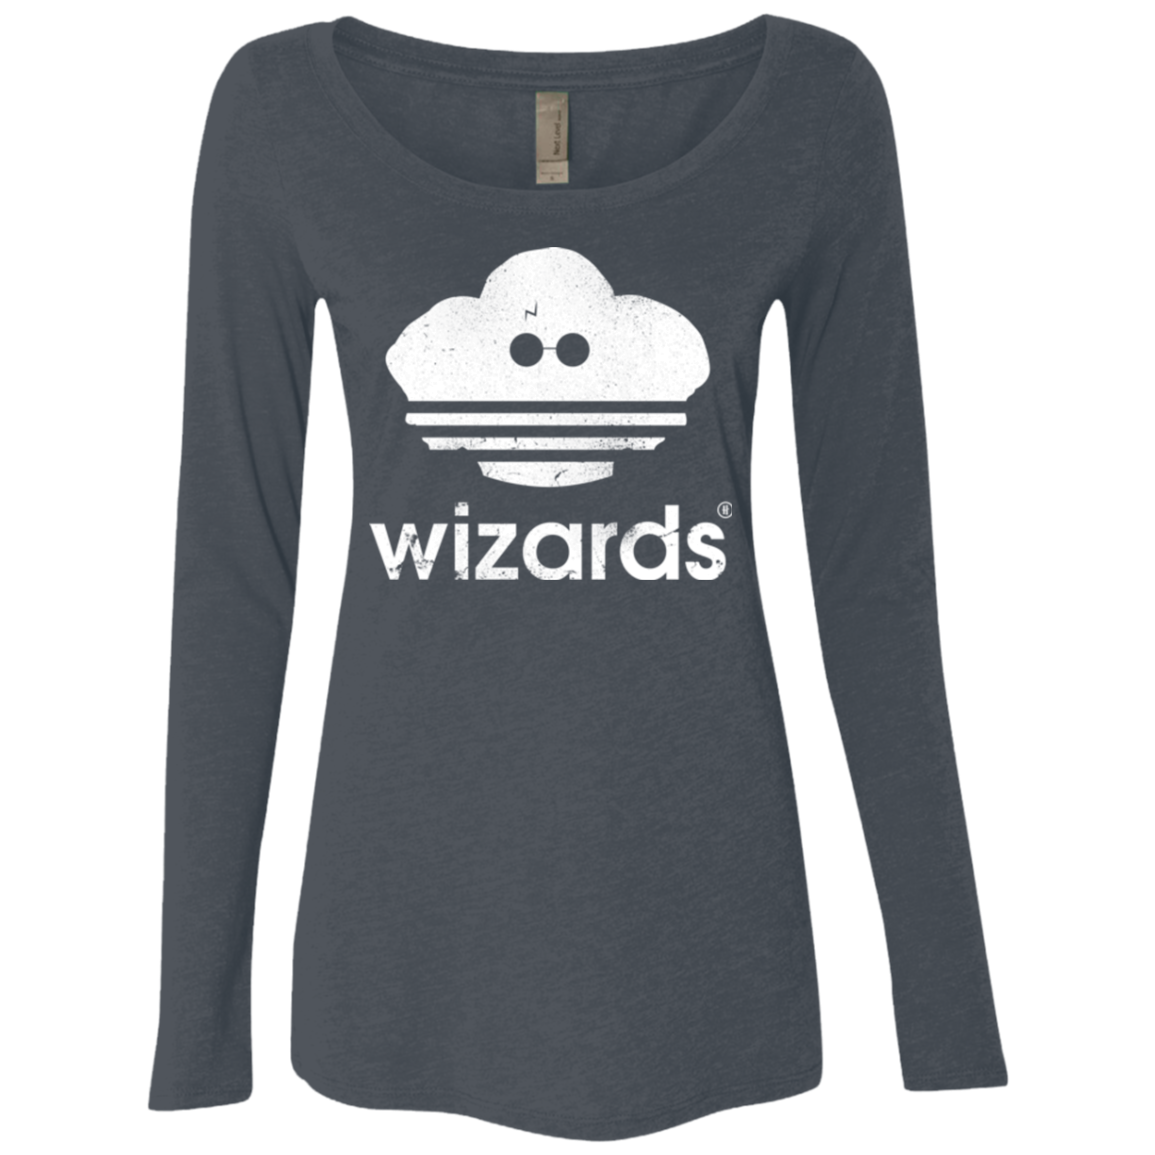 Wizards Women's Triblend Long Sleeve Shirt